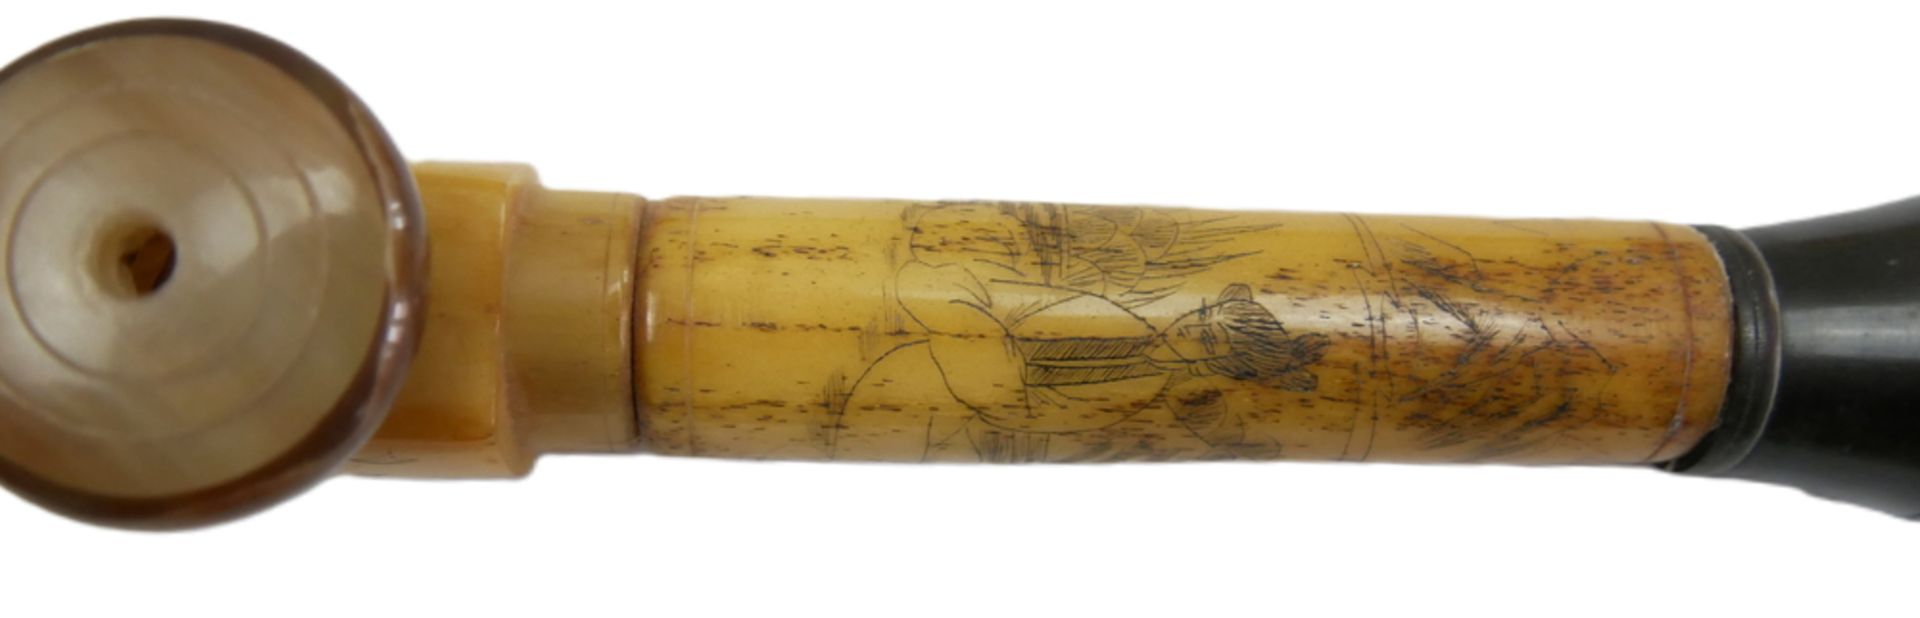 Chinesische Opiumpfeife aus Knochen, geschnitzt und verziert mit Geishas. Länge ca. 54 cm - Bild 3 aus 3